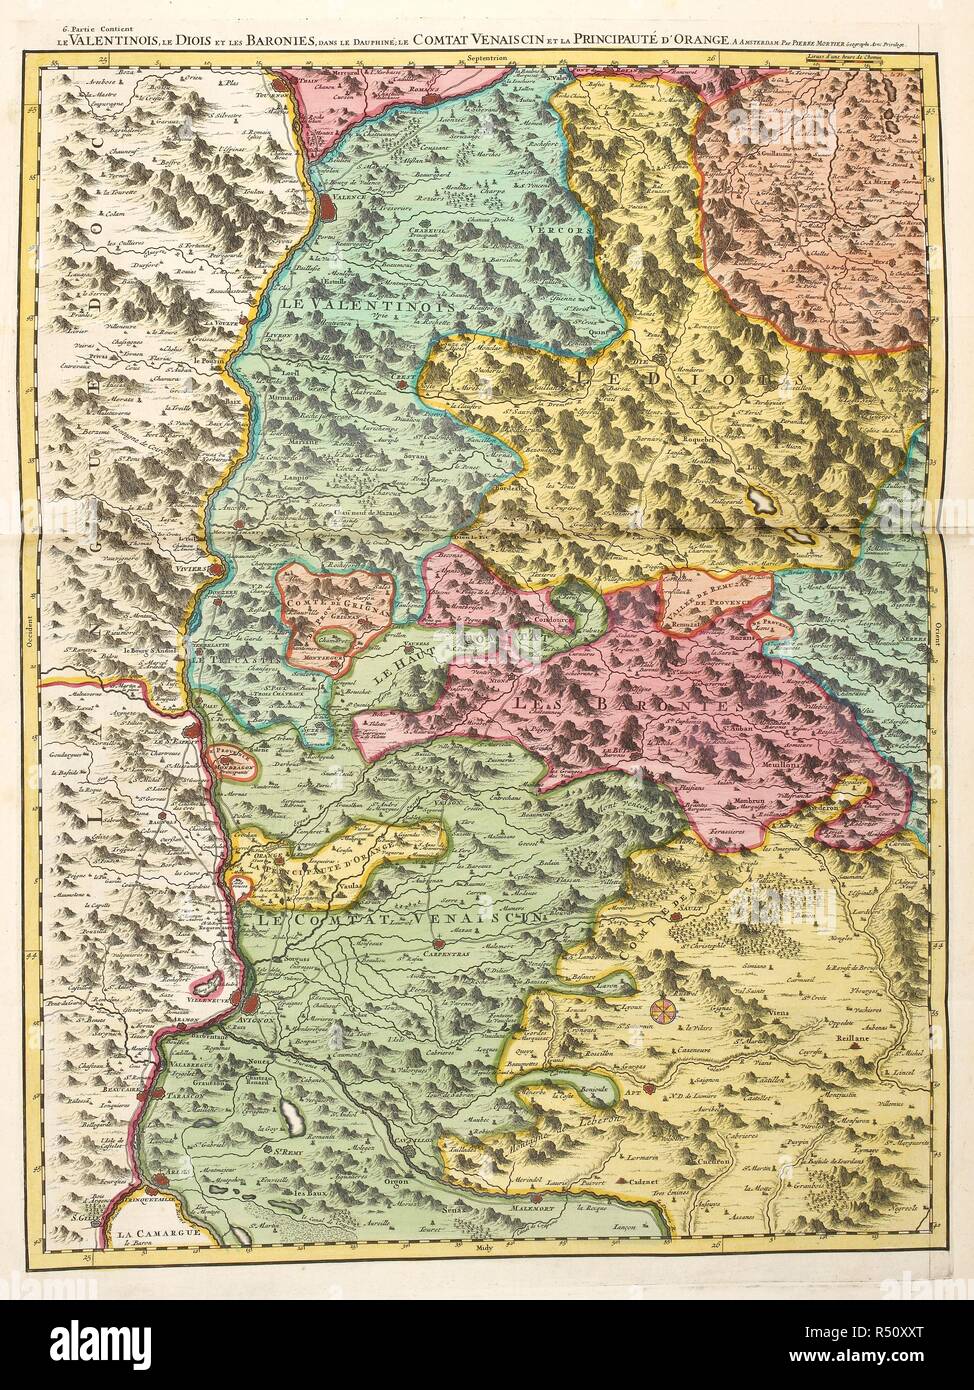 A map of inland landlocked countries in Europe. . Atlas Nouveau aÌ€ lâ€™usage de MonseÌigneur le Duc de Bourgoyne. Amsterdam Netherlands 1700. Source: Maps 39.f.14 Map 200. Language: French. Author: Sanson, S. Stock Photo